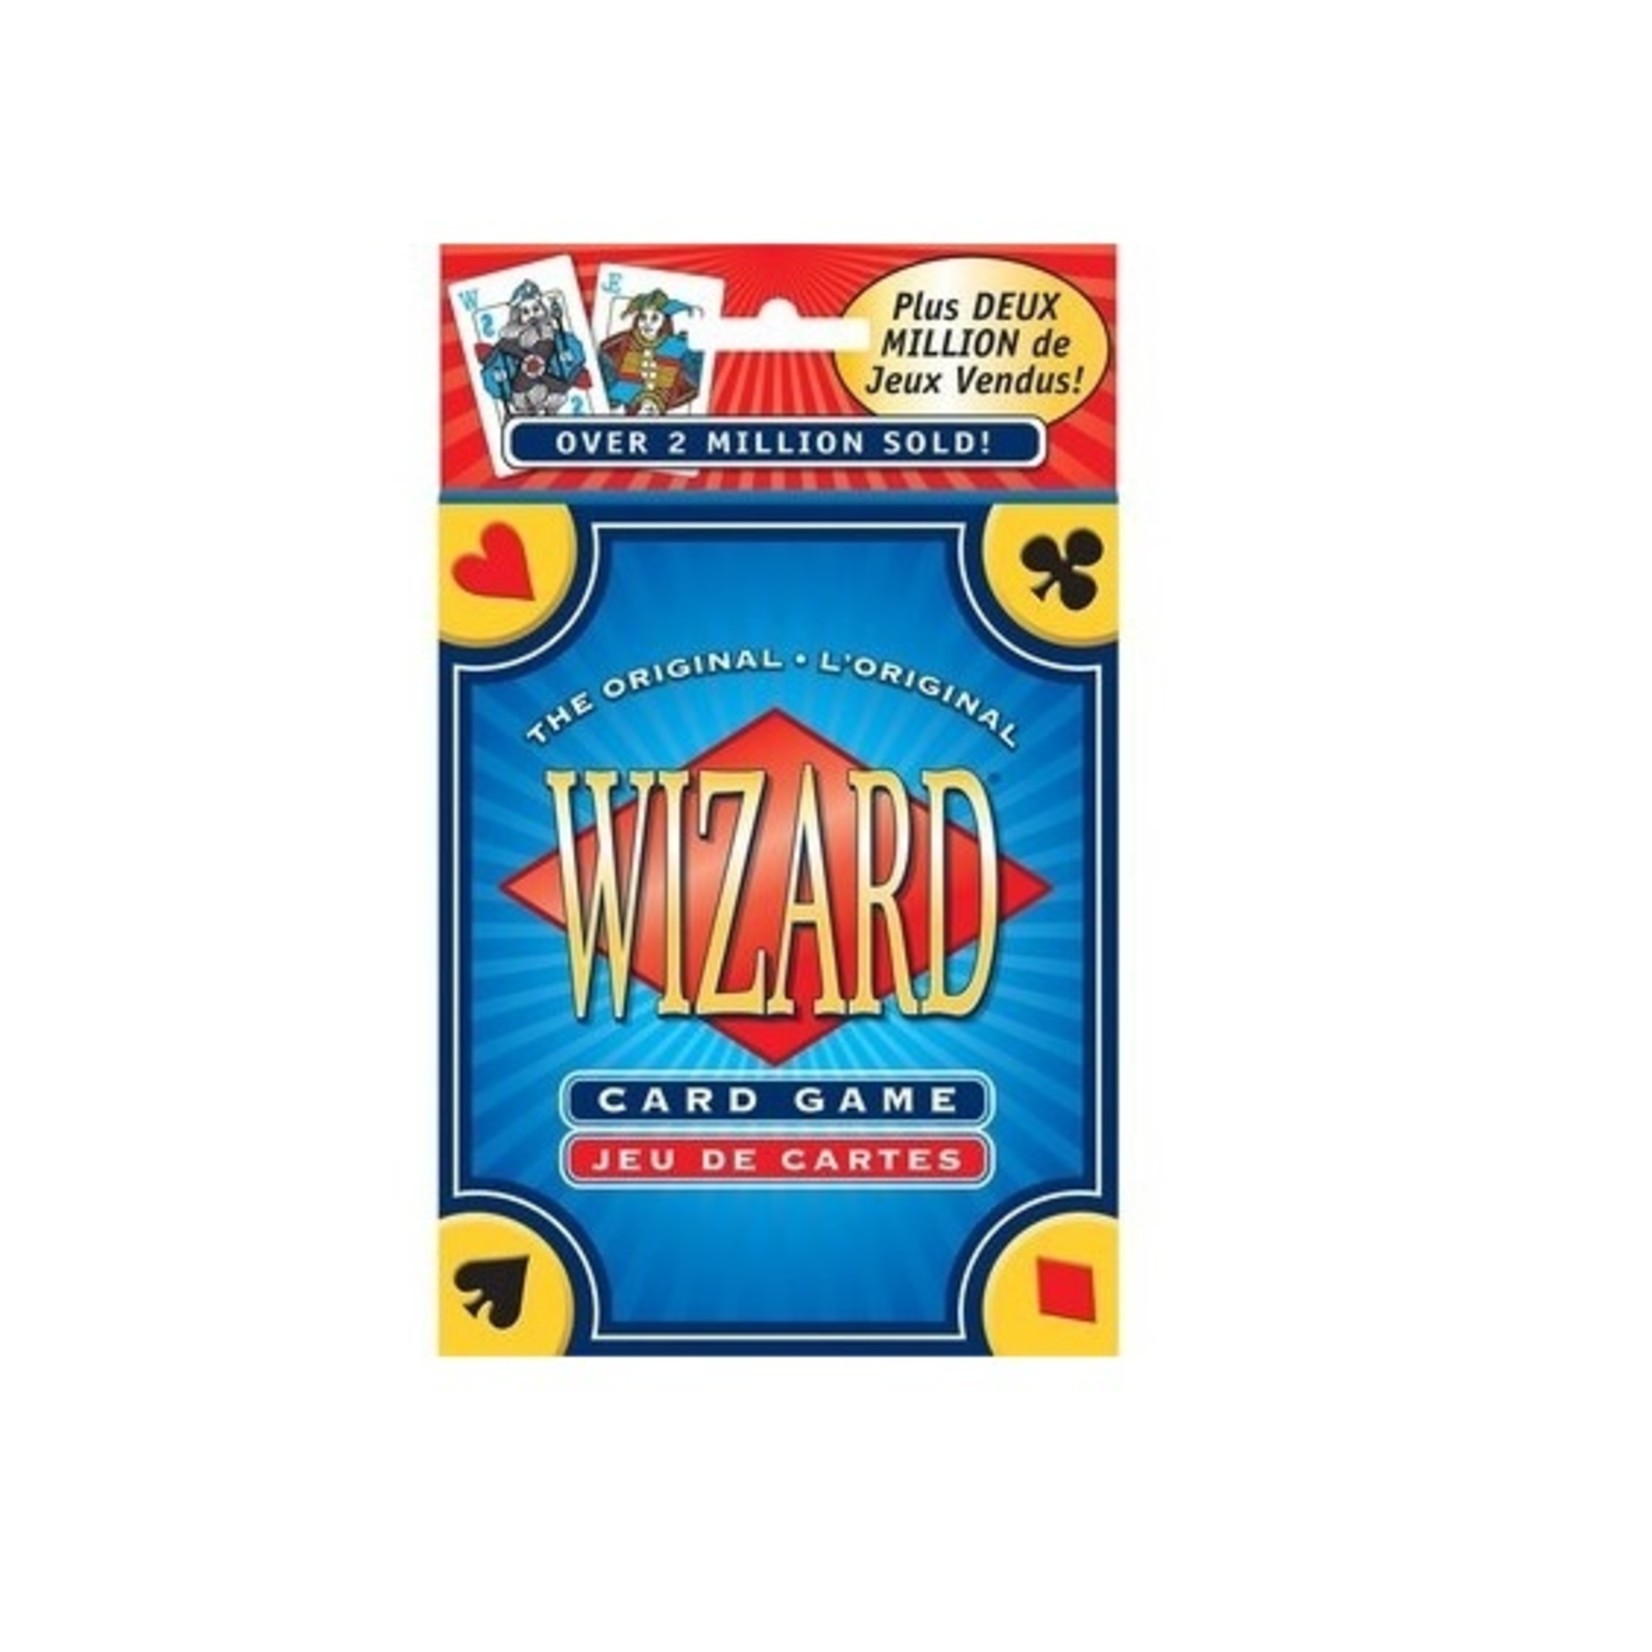 Wizard - Jeu de cartes (Multilingue)